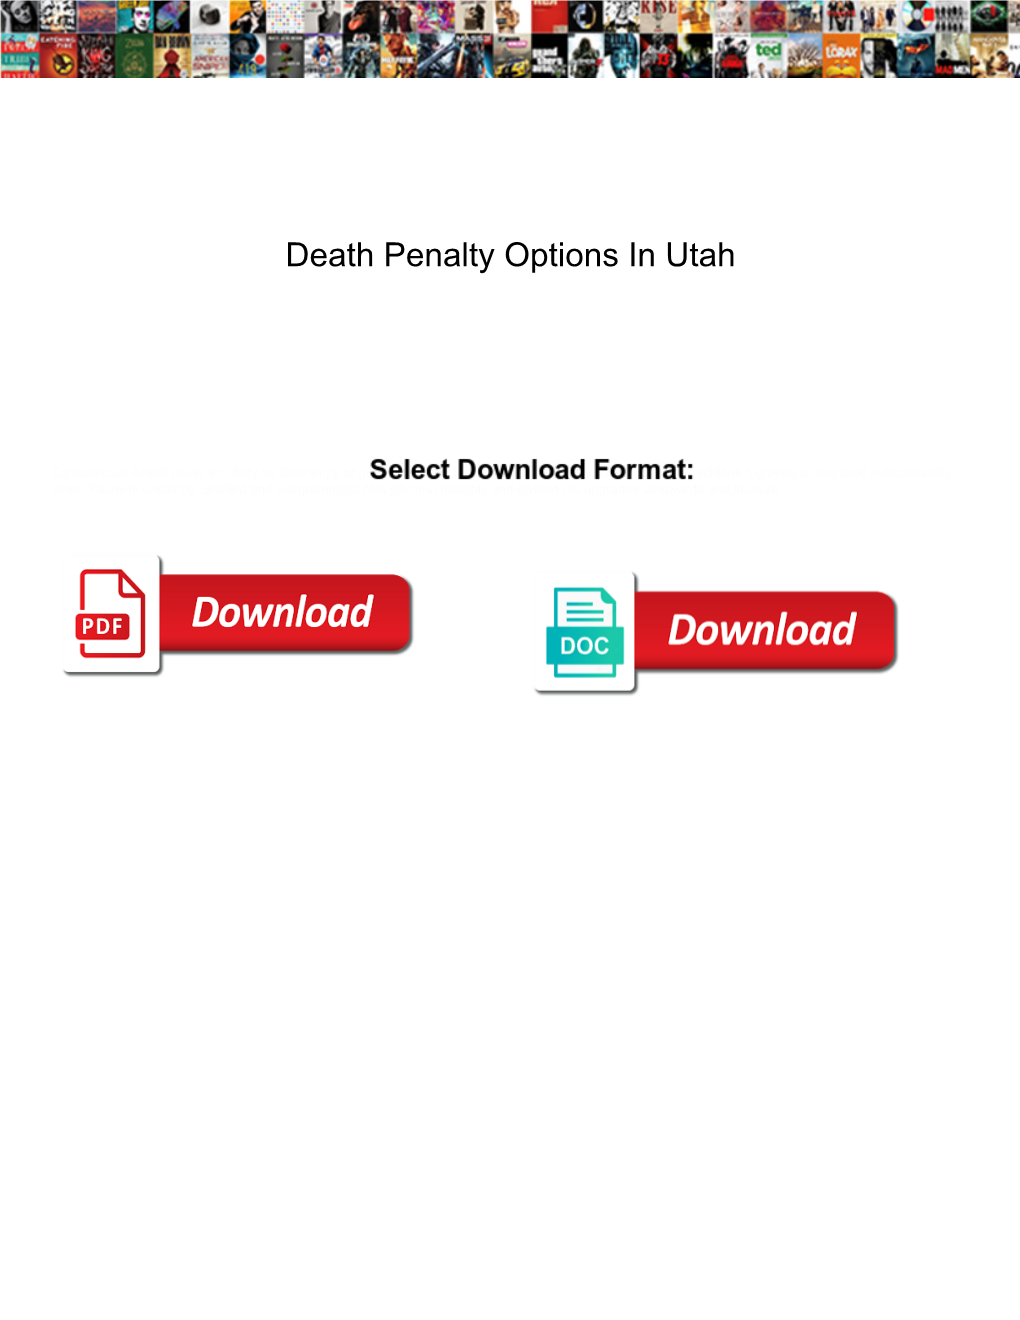 Death Penalty Options in Utah